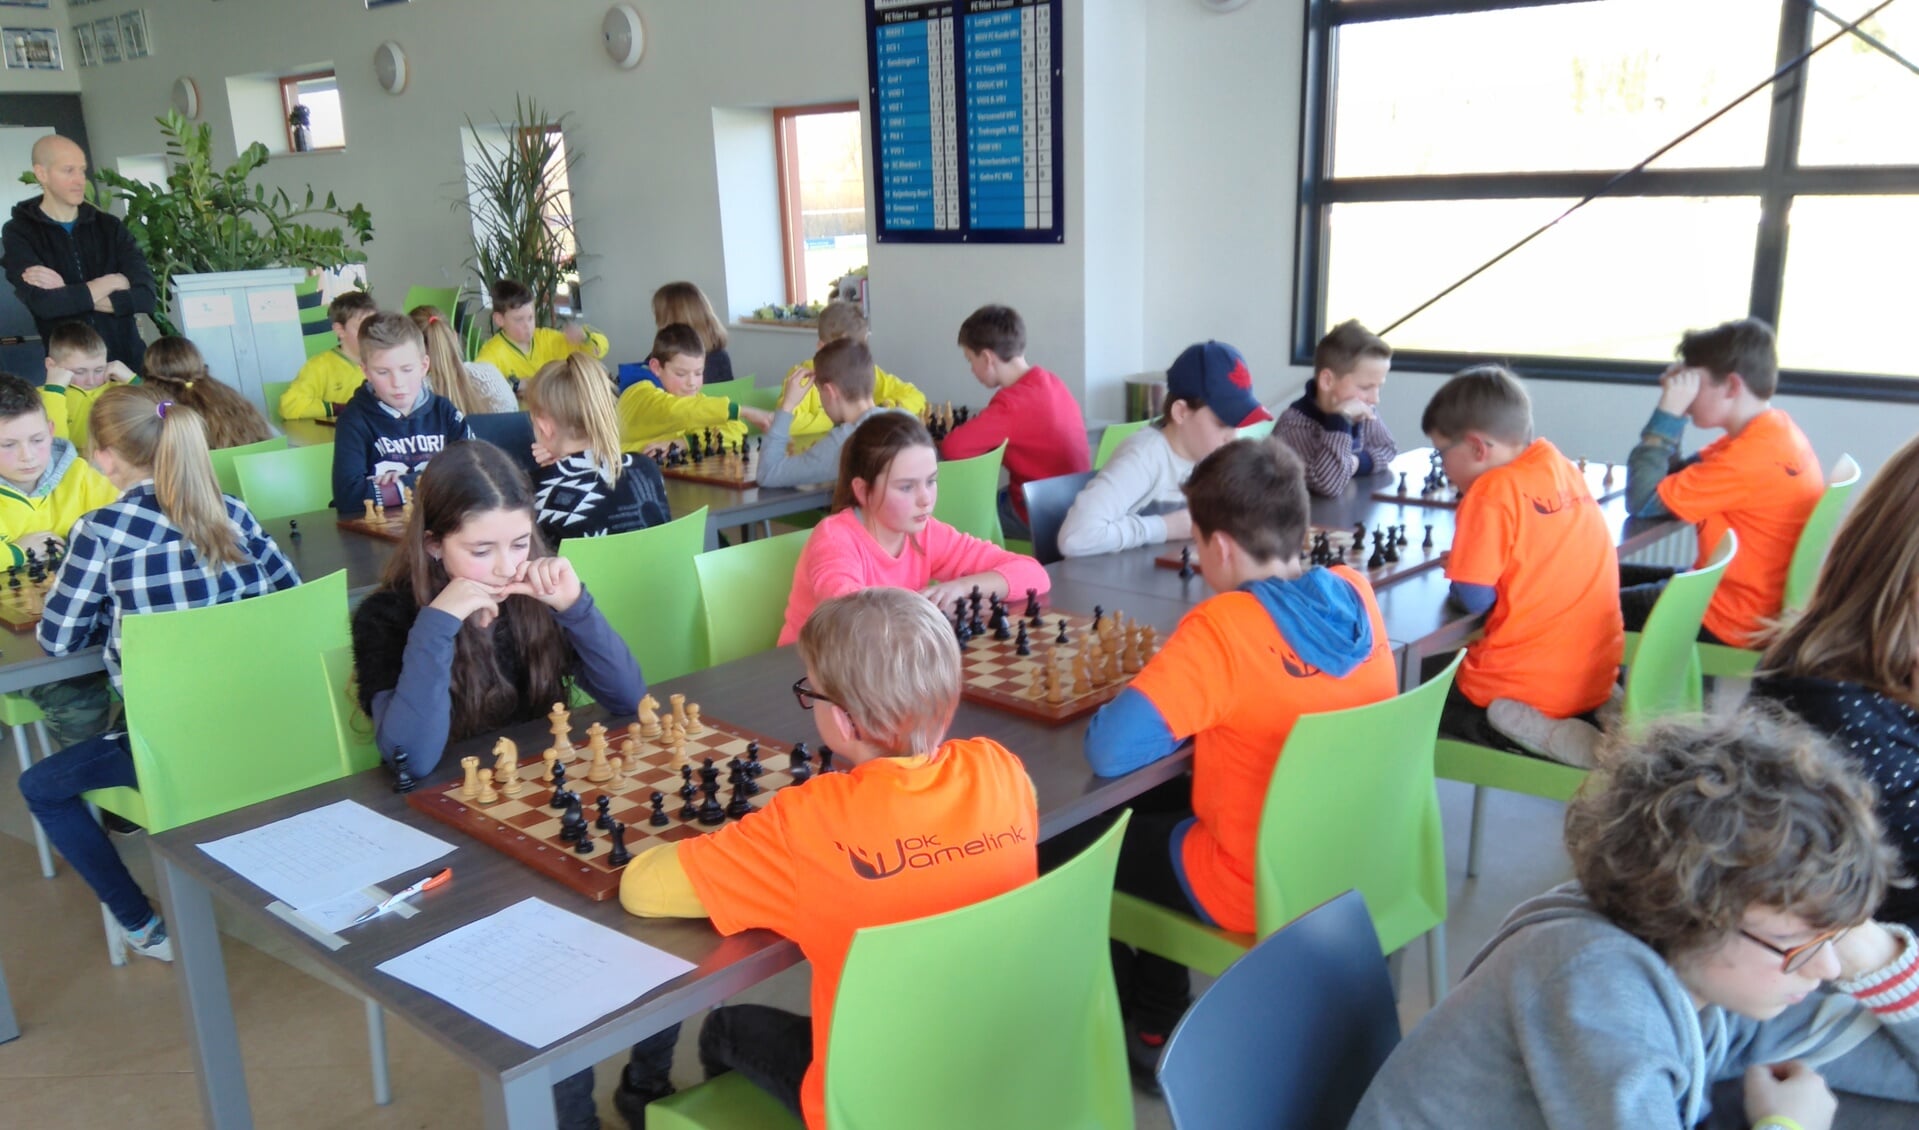 De jonge schakers geconcentreerd achter het bord. Foto: PR WSG